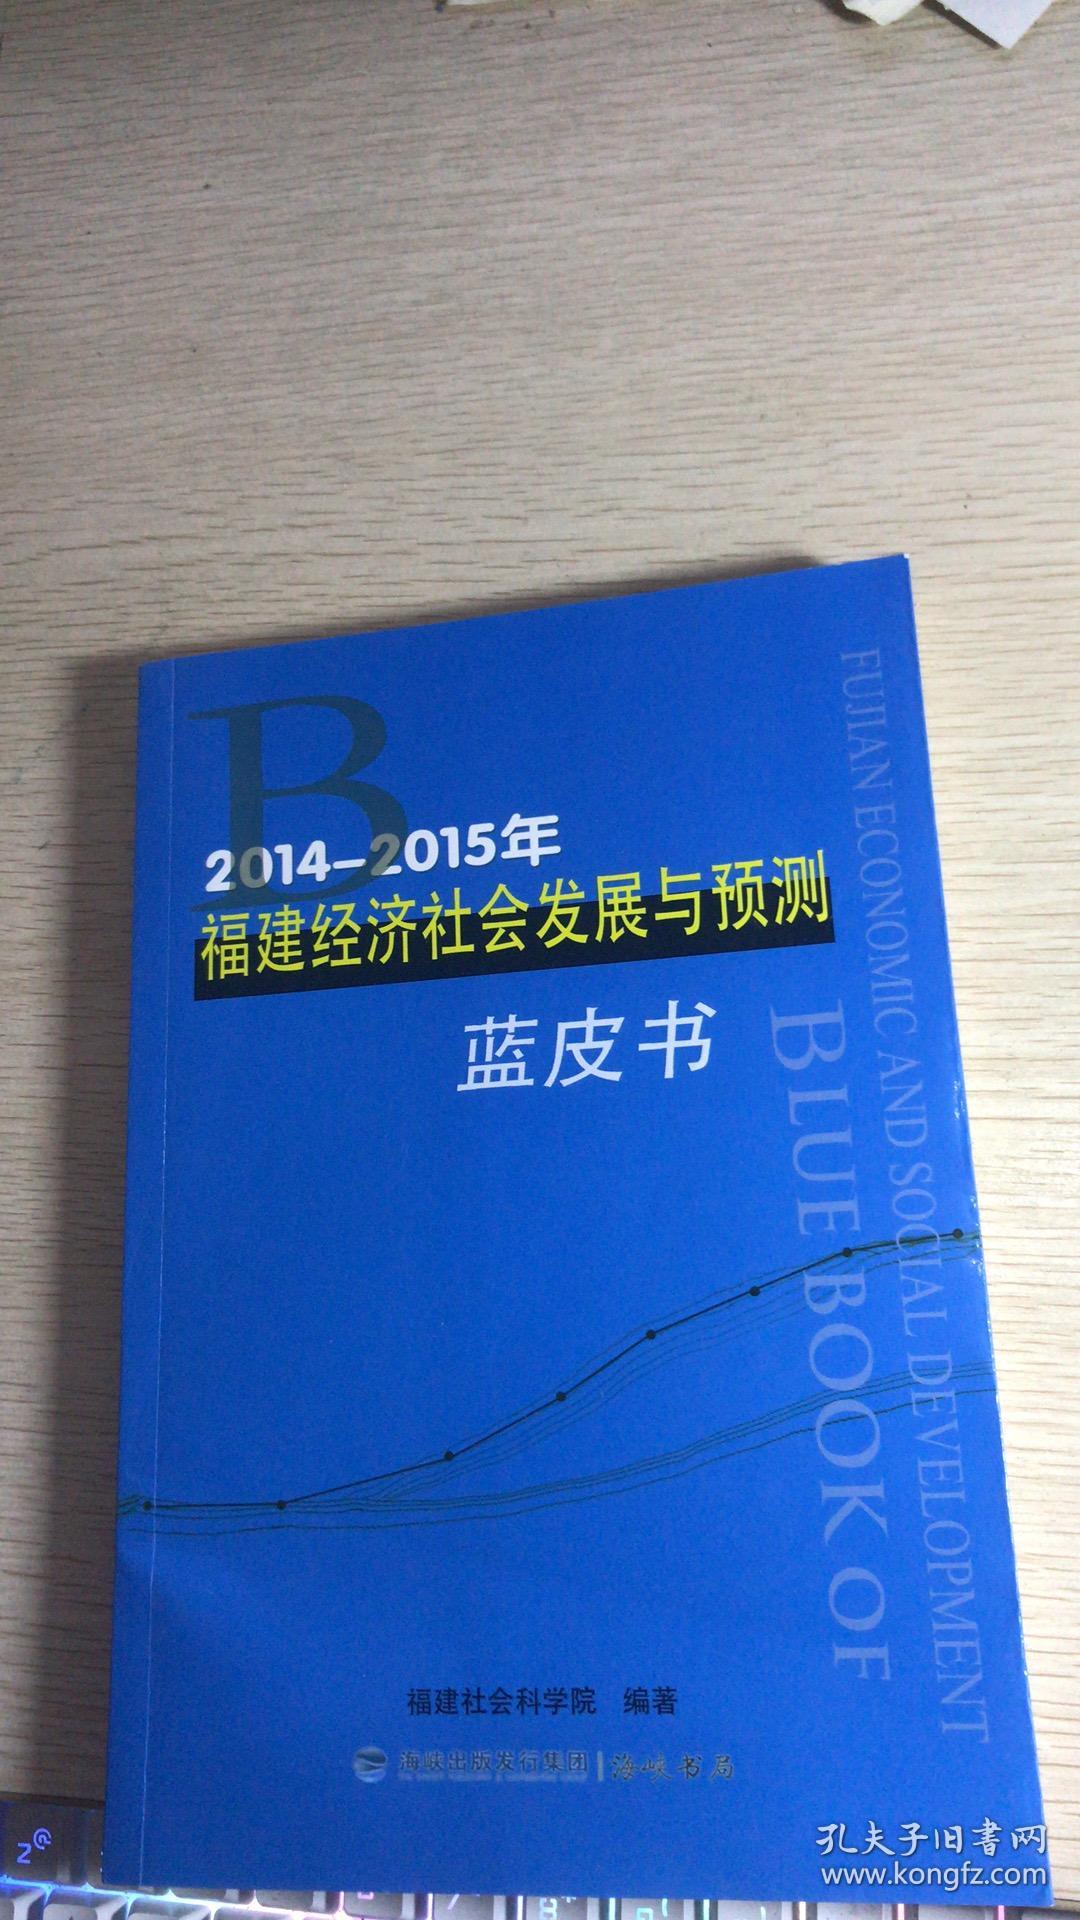 2014-2015福建经济社会发展与预测蓝皮书